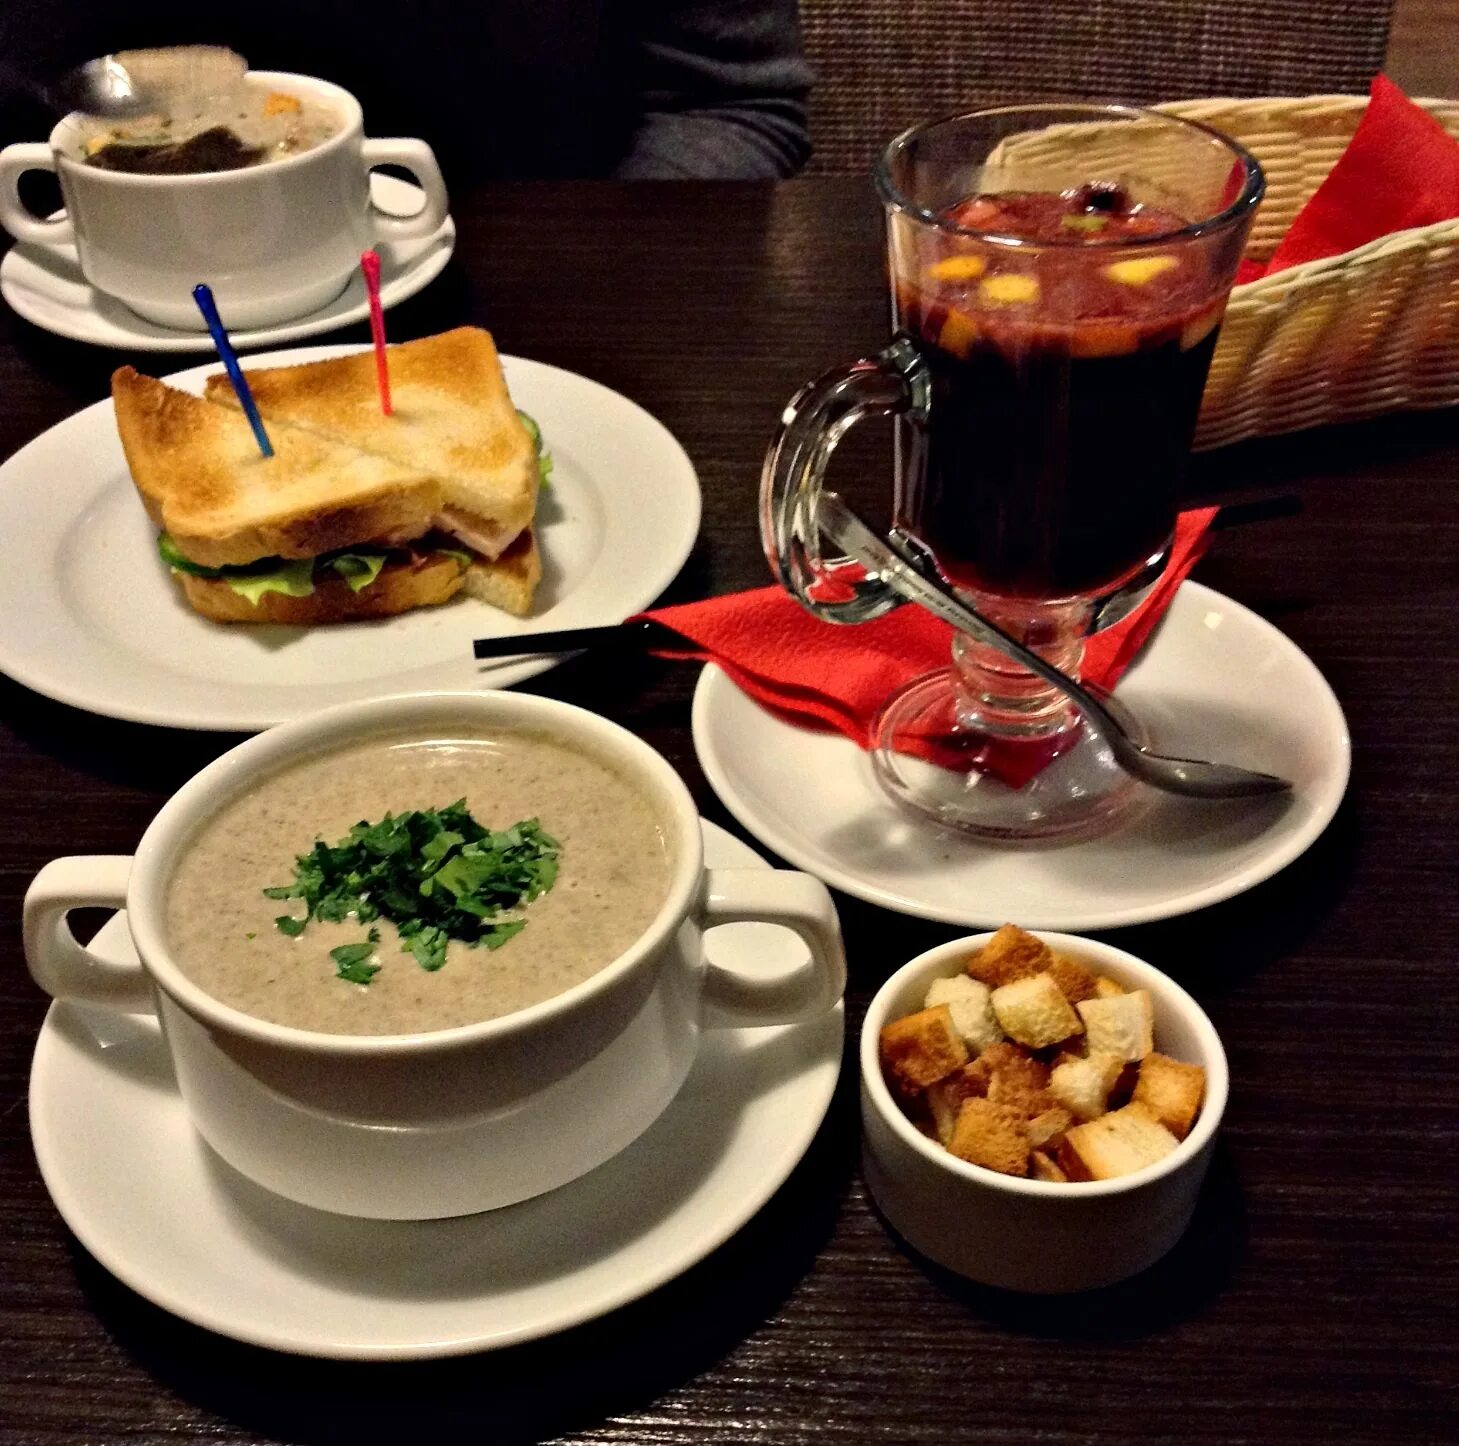 Большие тарелки Ленина 99 Екатеринбург. Еда в ресторане. Обед в кафе. Еда из ресторана. В кафе предлагают 3 первых блюда